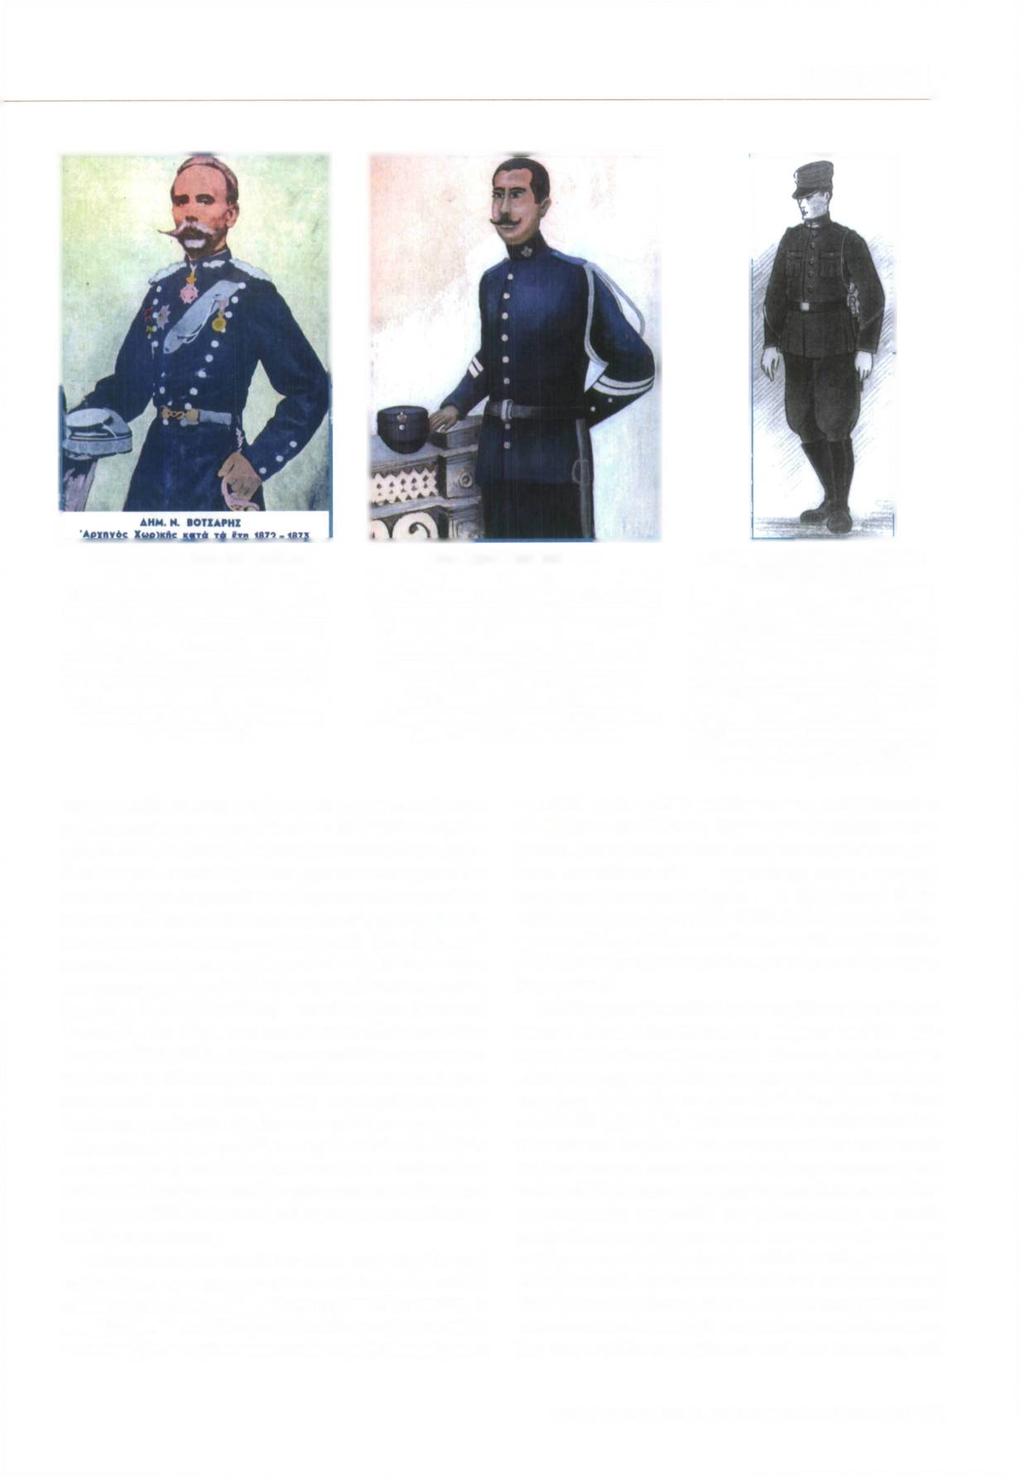 ΙΣΤΟΡΙΚΟ \ Με το Β.Δ. της 14ης Μοΐου 1868 πστολή των Χωροφυλάκων τροποποιήθηκε για άλλη μία φορά. Συγκεκριμένα με το ανωτέρω Β.Δ. καθορίστηκε για πρώτη φορά μικρή και μεγάλη στολή με την τελευταίο να αποτελεί την επίσημη και λαμπρή στολή που σε αυτή πλέον μόνο προβλέπεται να φέρονται τα μεγάλα αμφιμασχάλια.